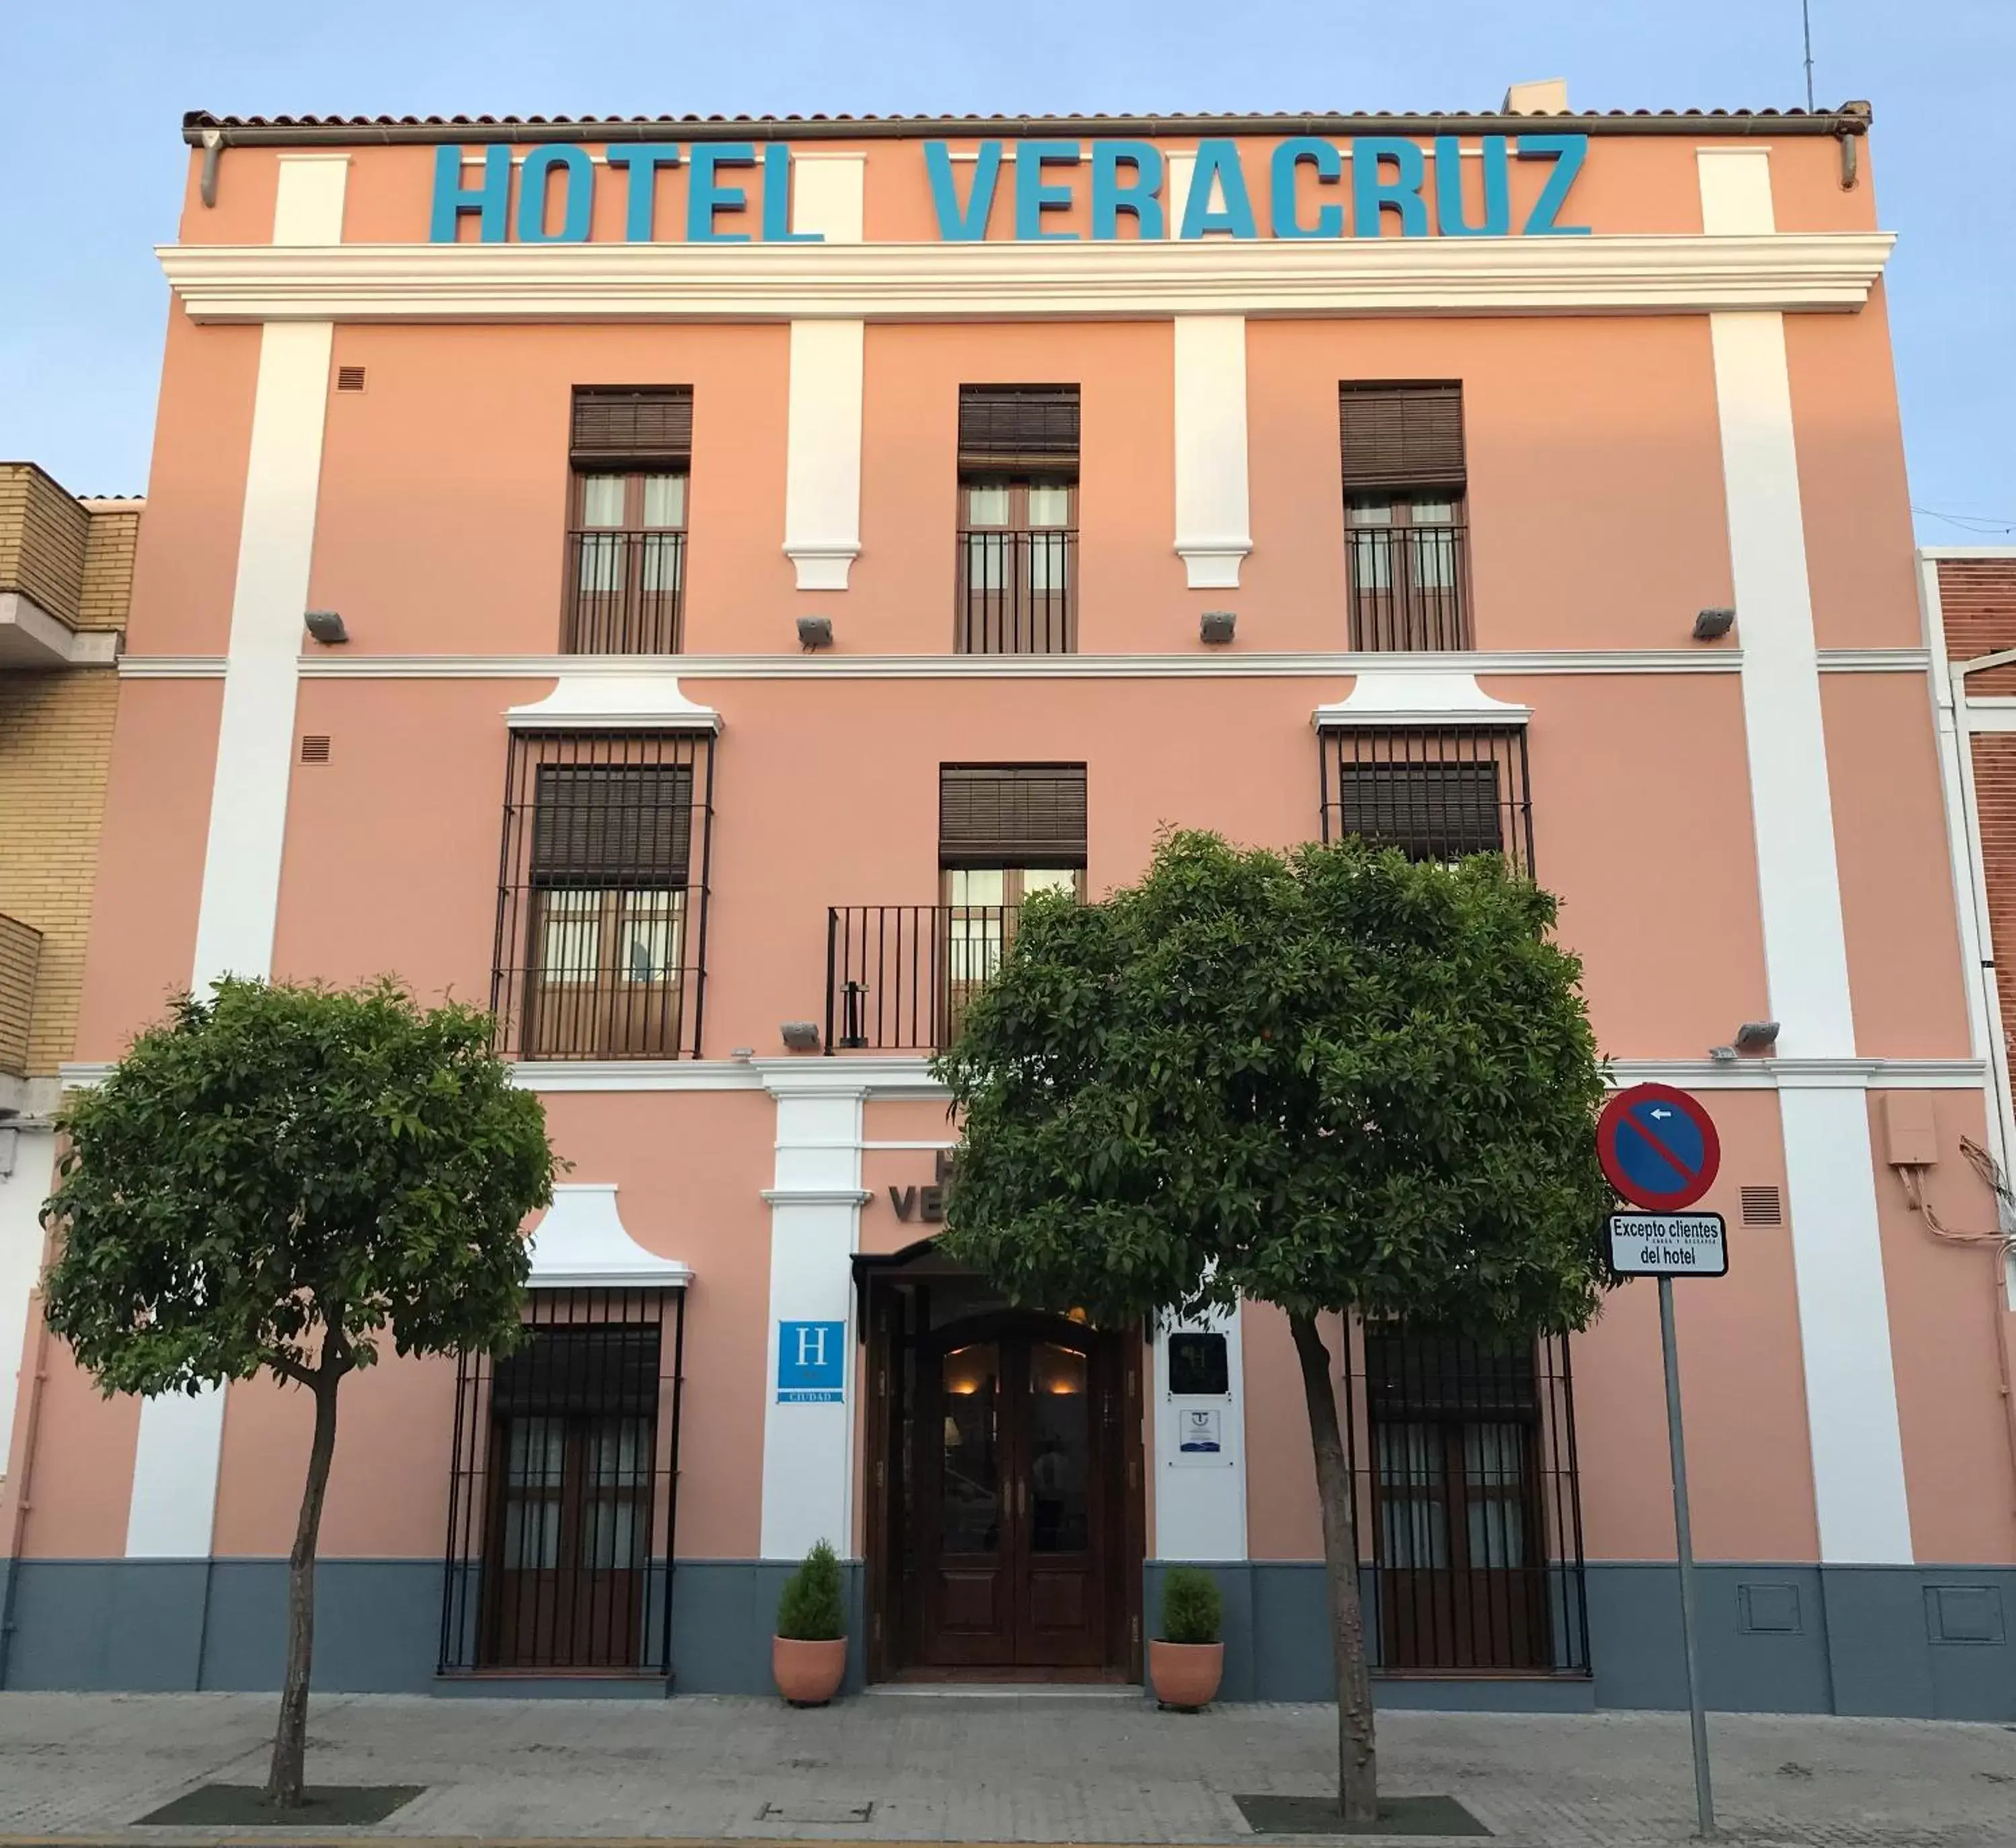 Facade/entrance, Property Building in Hotel Veracruz